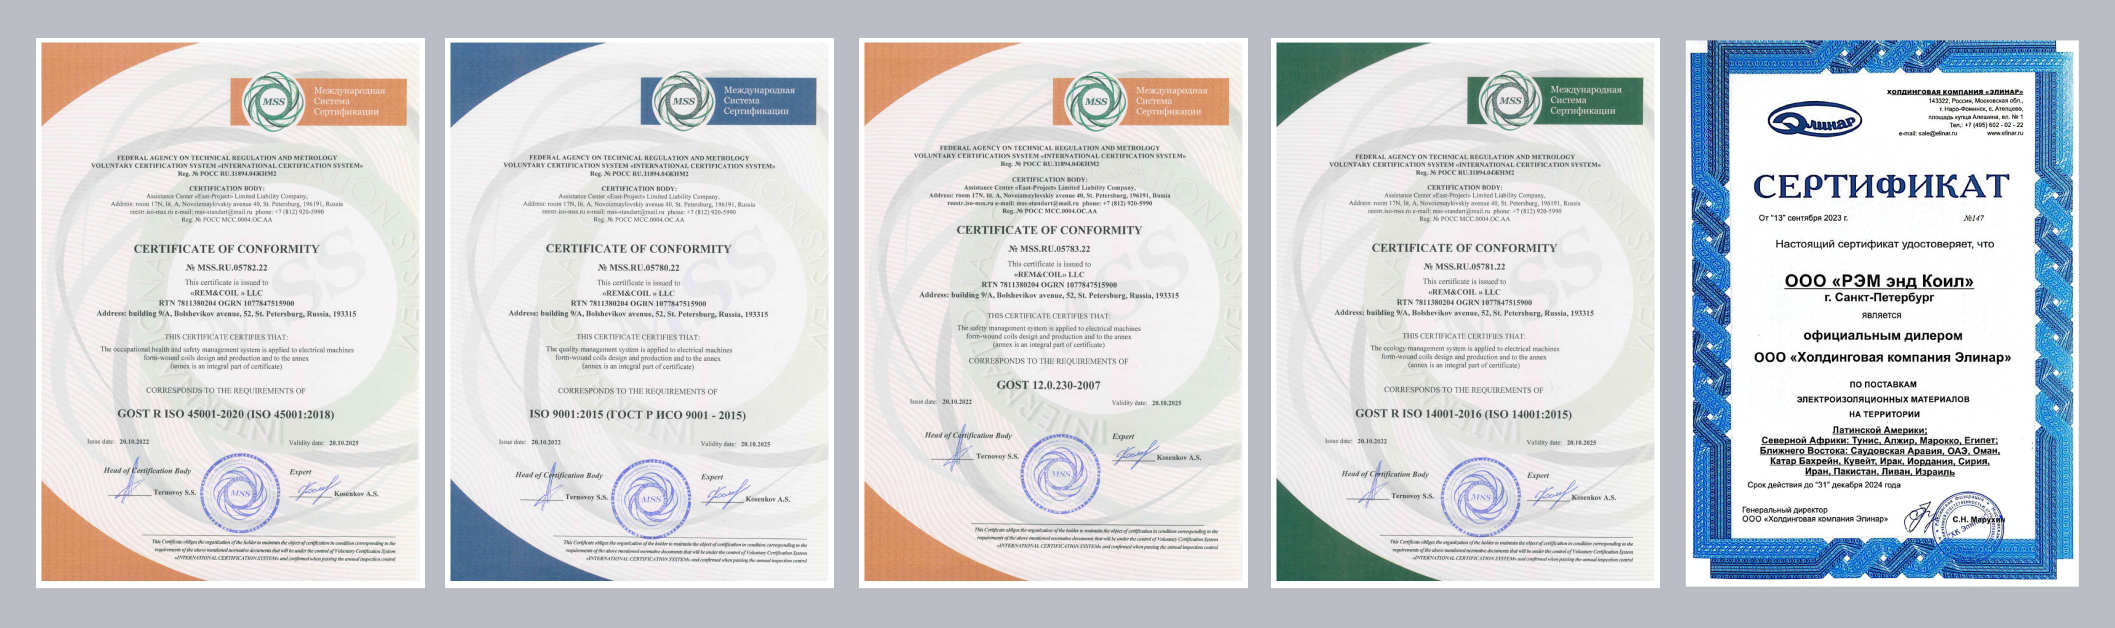 Сертификаты Rem&Coil